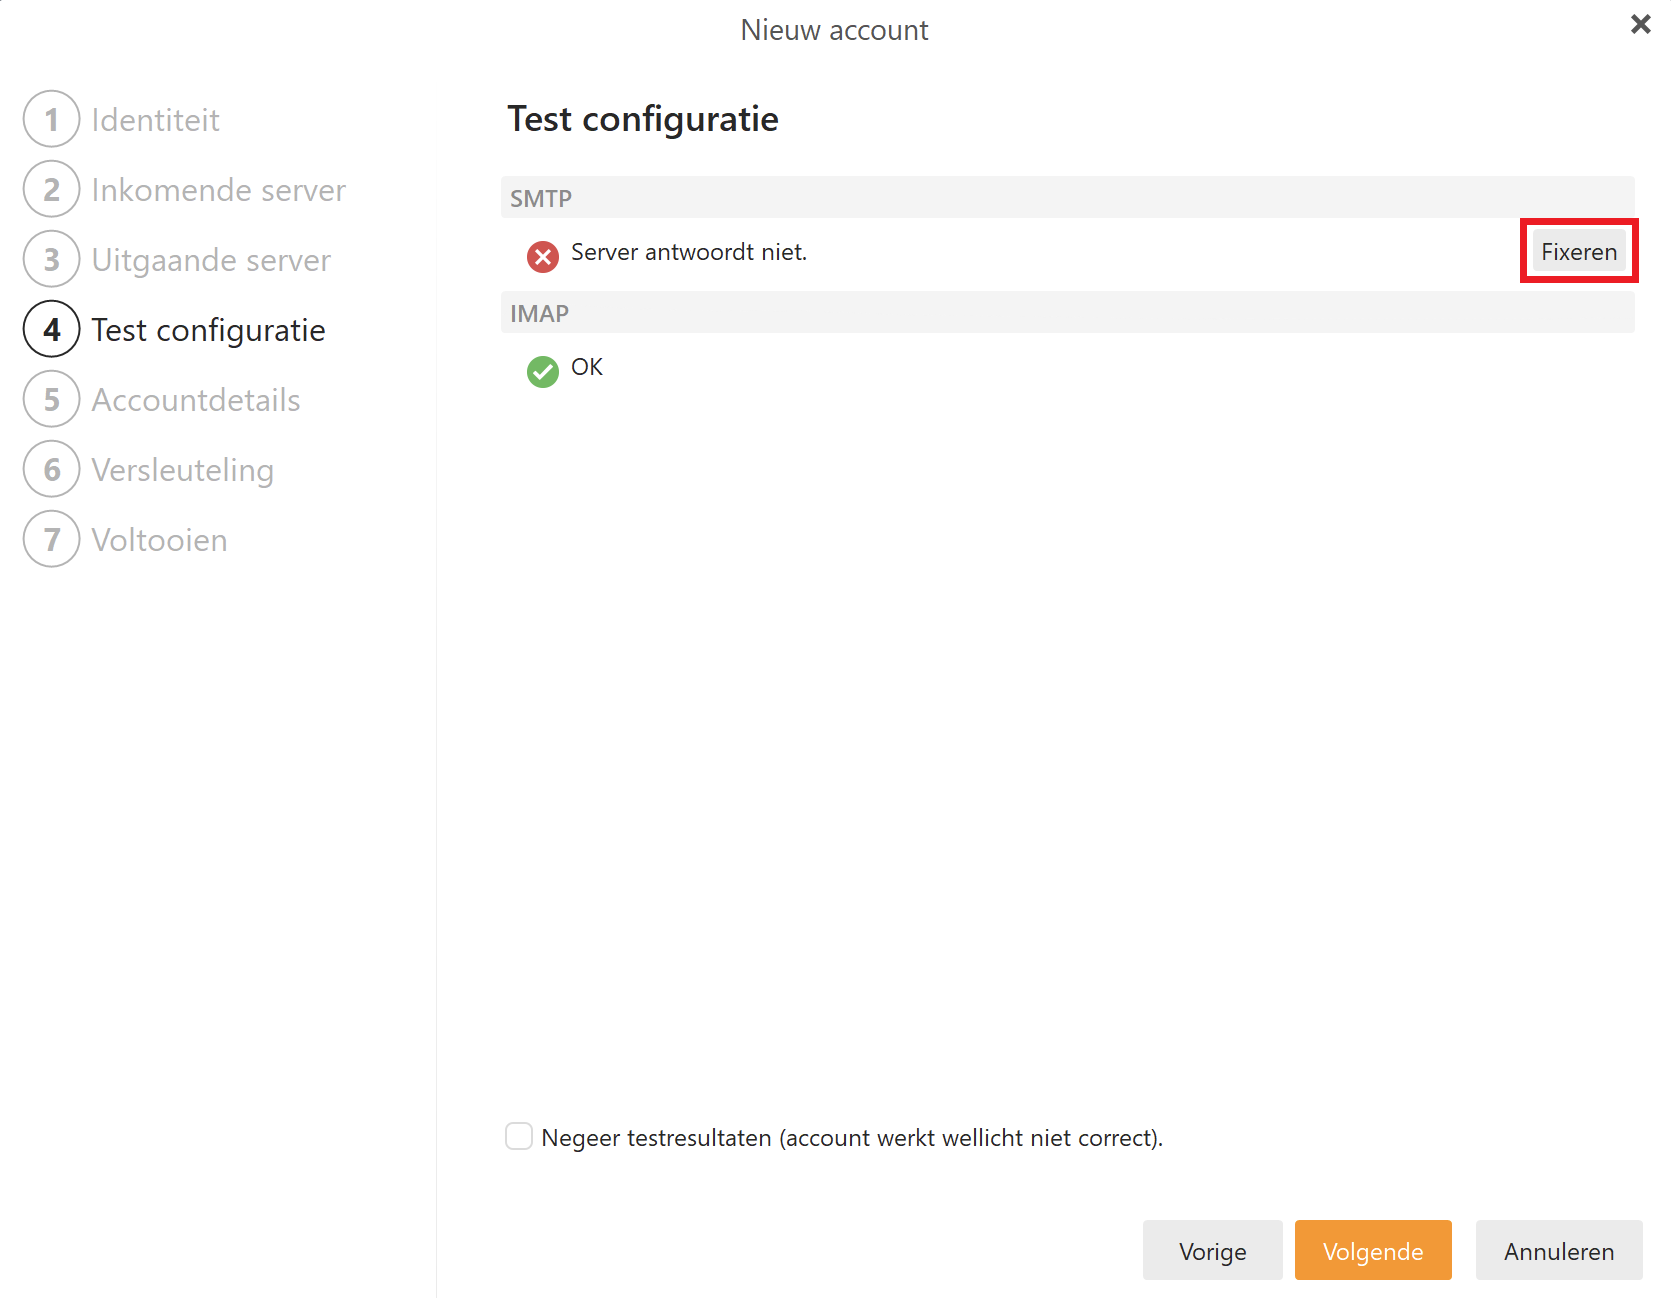 EM Client - Nieuw account - Test configuratie - Fixeren.png